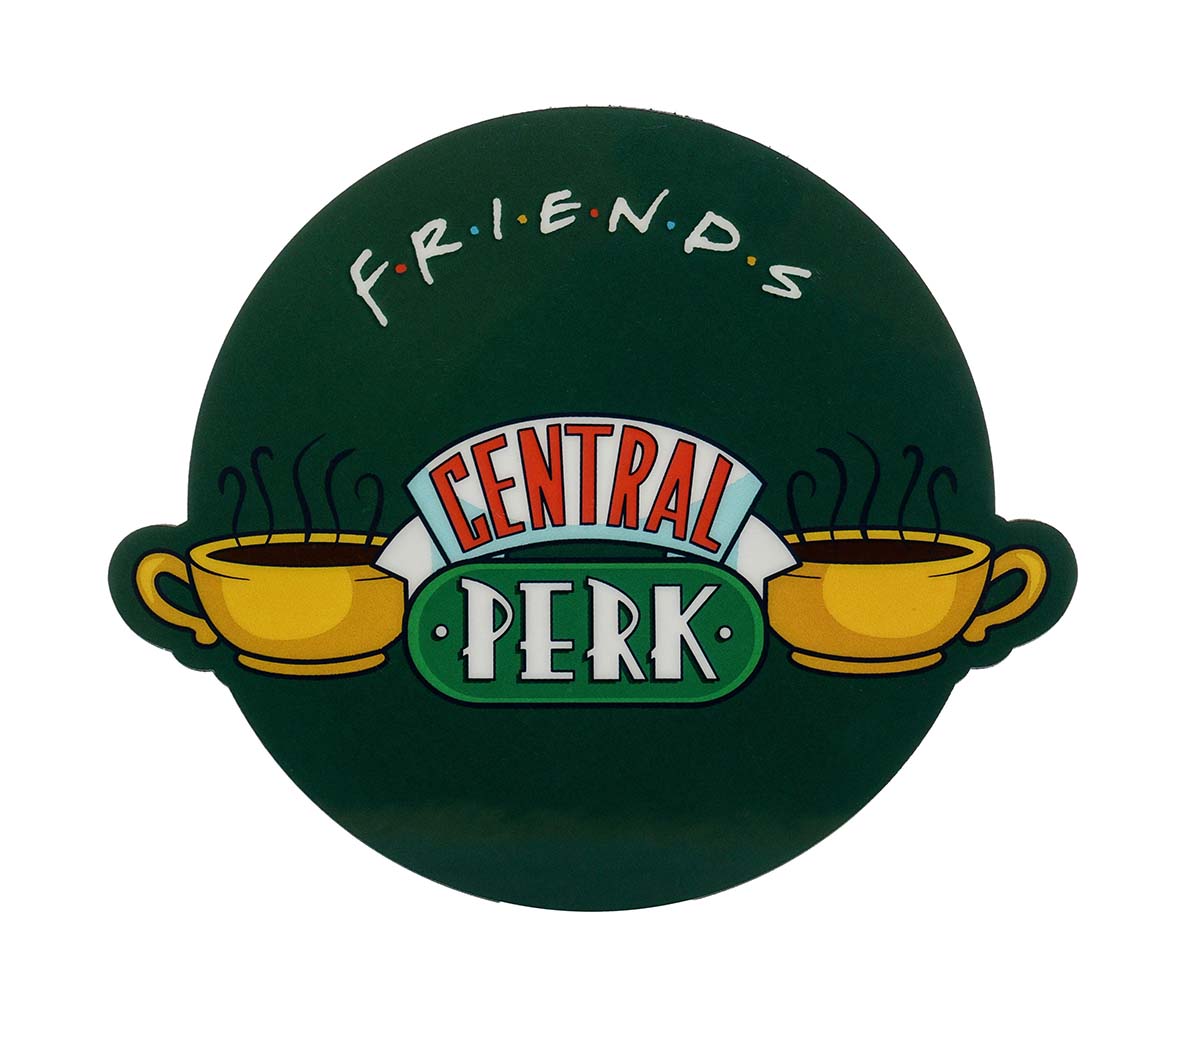 Podmetač FRIENDS - CENTRAL PERK 